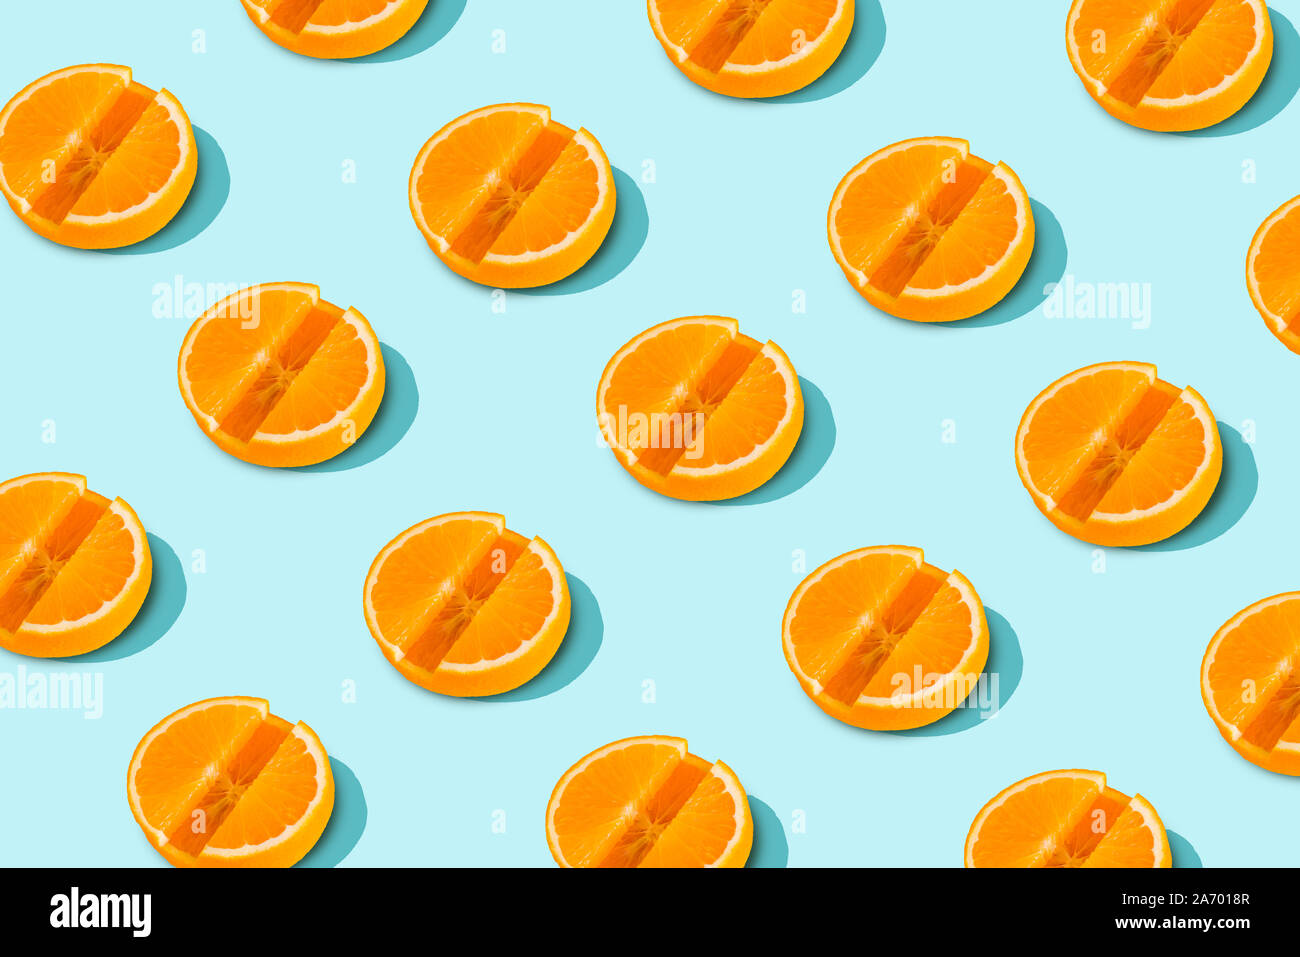 La vitamina C modello di fettine di arancia in forma di compresse su fondo azzurro. La minima nozione di salute Foto Stock